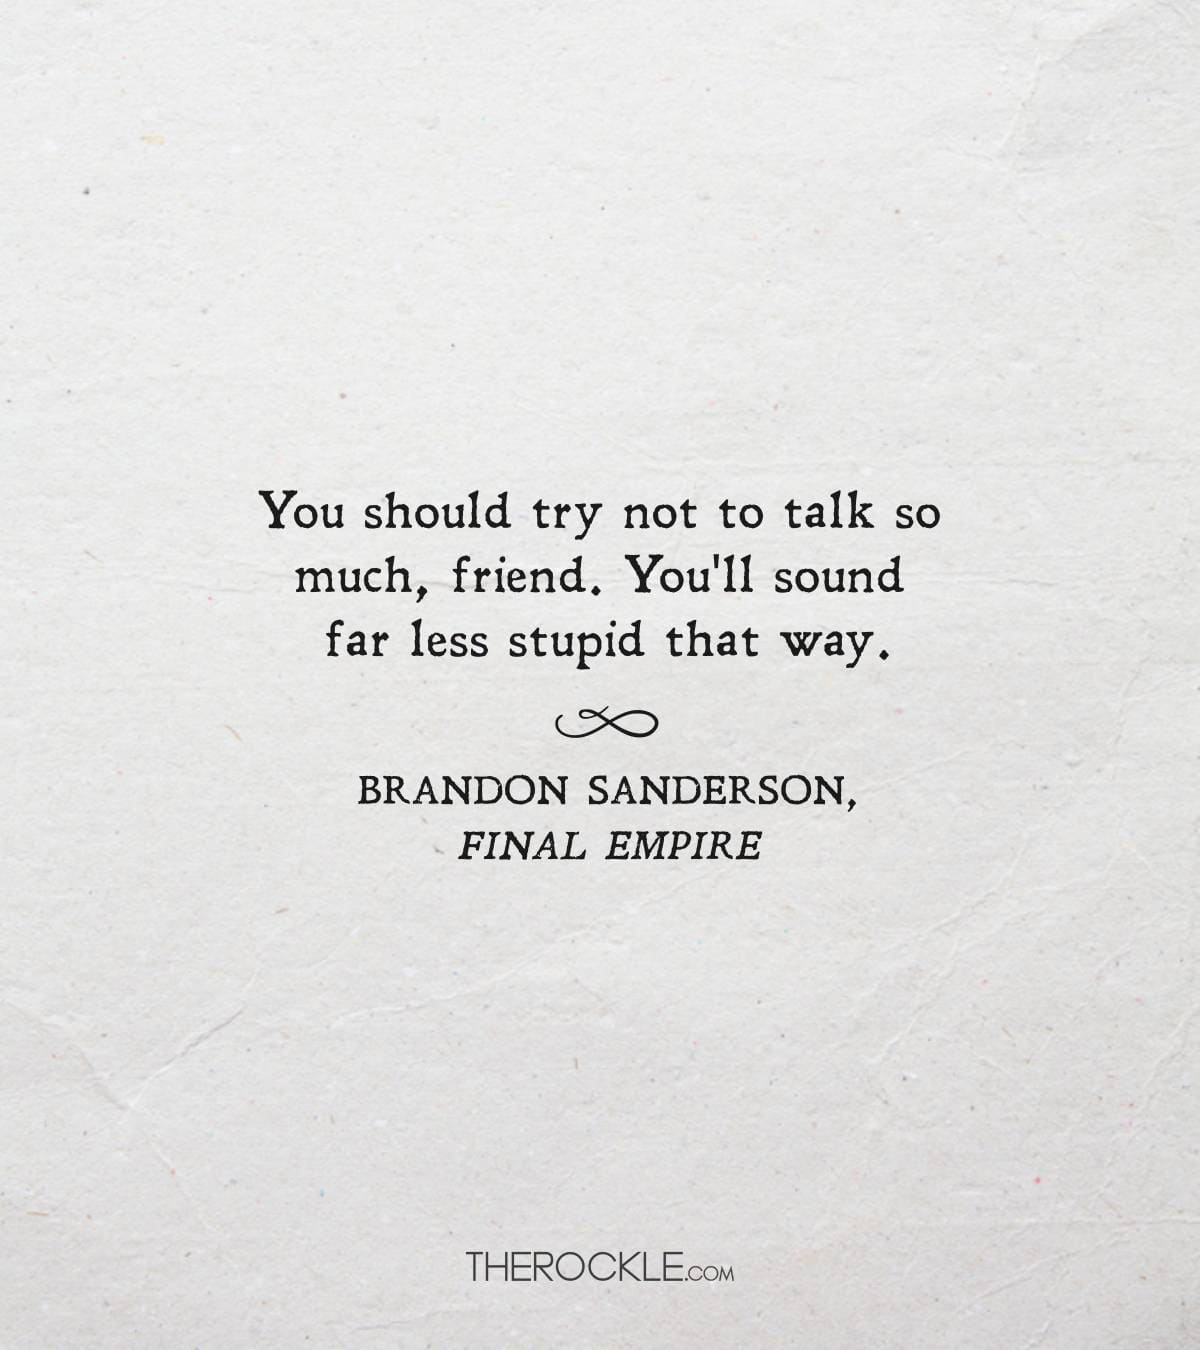 Funny quote from Brandon Sanderson's Final Empire 